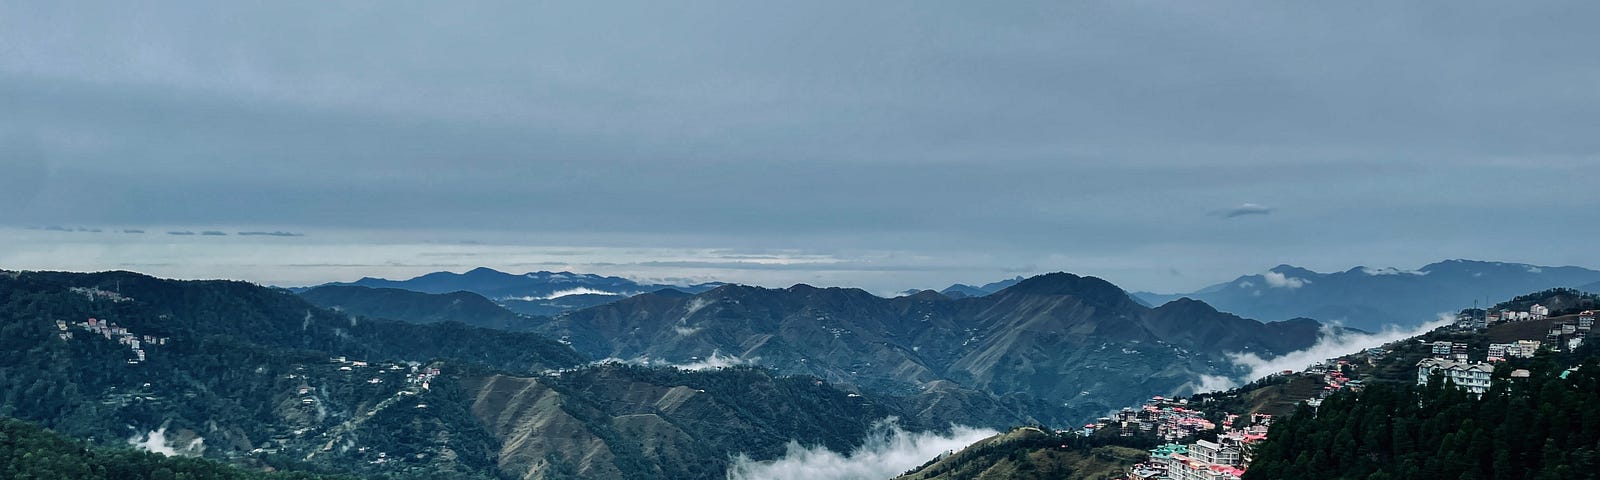 Shimla — Queen of Hills | Downloaded from Unsplash